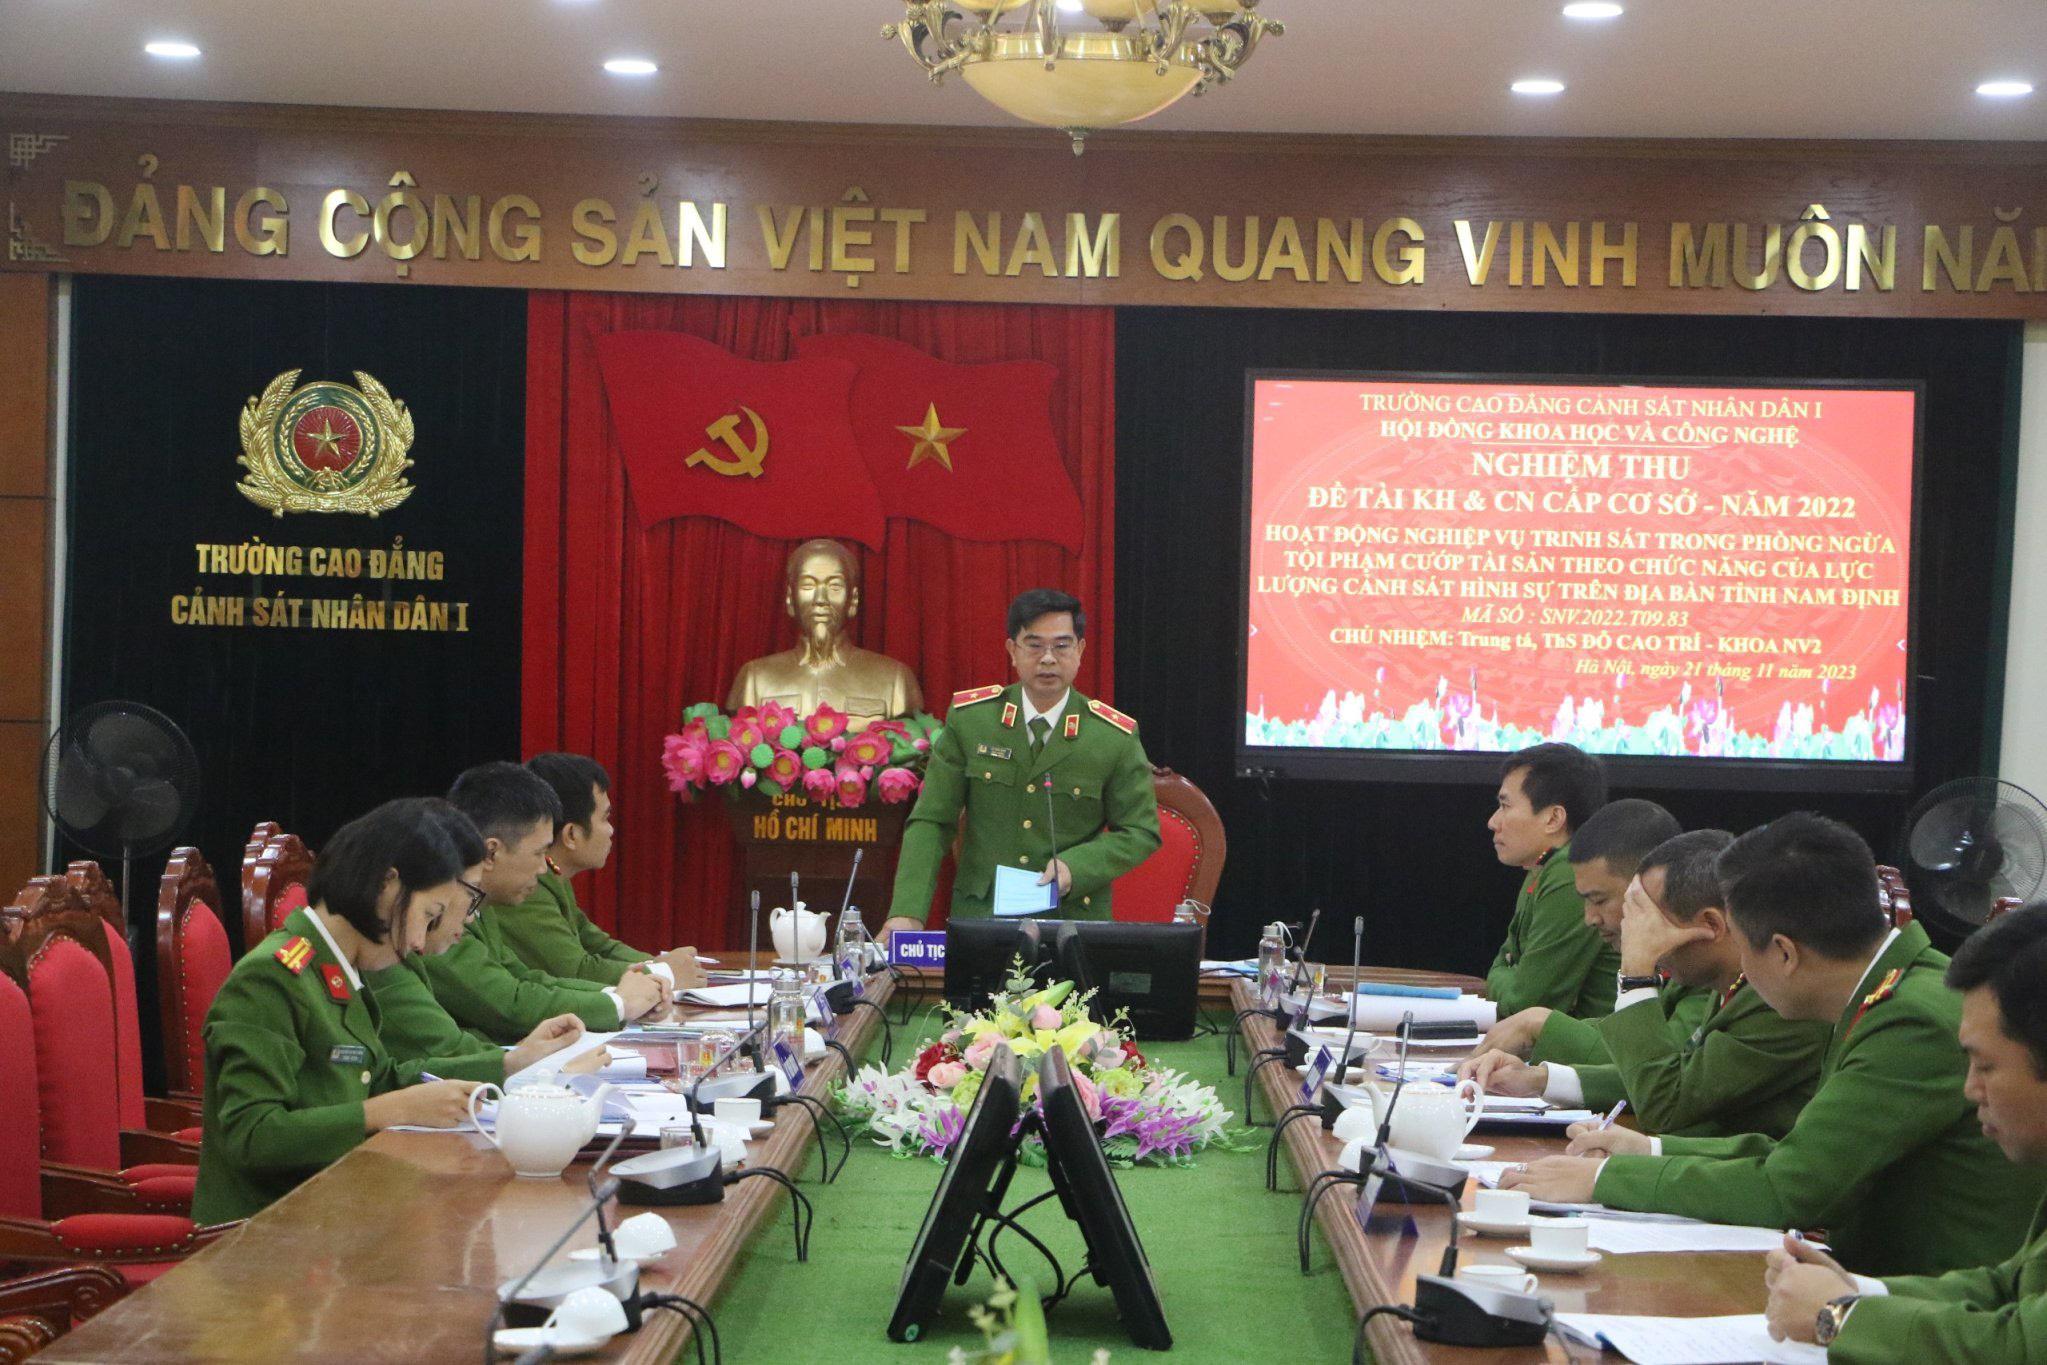 Nghiệm thu đề tài KH&CN “Hoạt động nghiệp vụ trinh sát trong phòng ngừa tội phạm cướp tài sản theo chức năng của lực lượng Cảnh sát hình sự trên địa bàn tỉnh Nam Định”